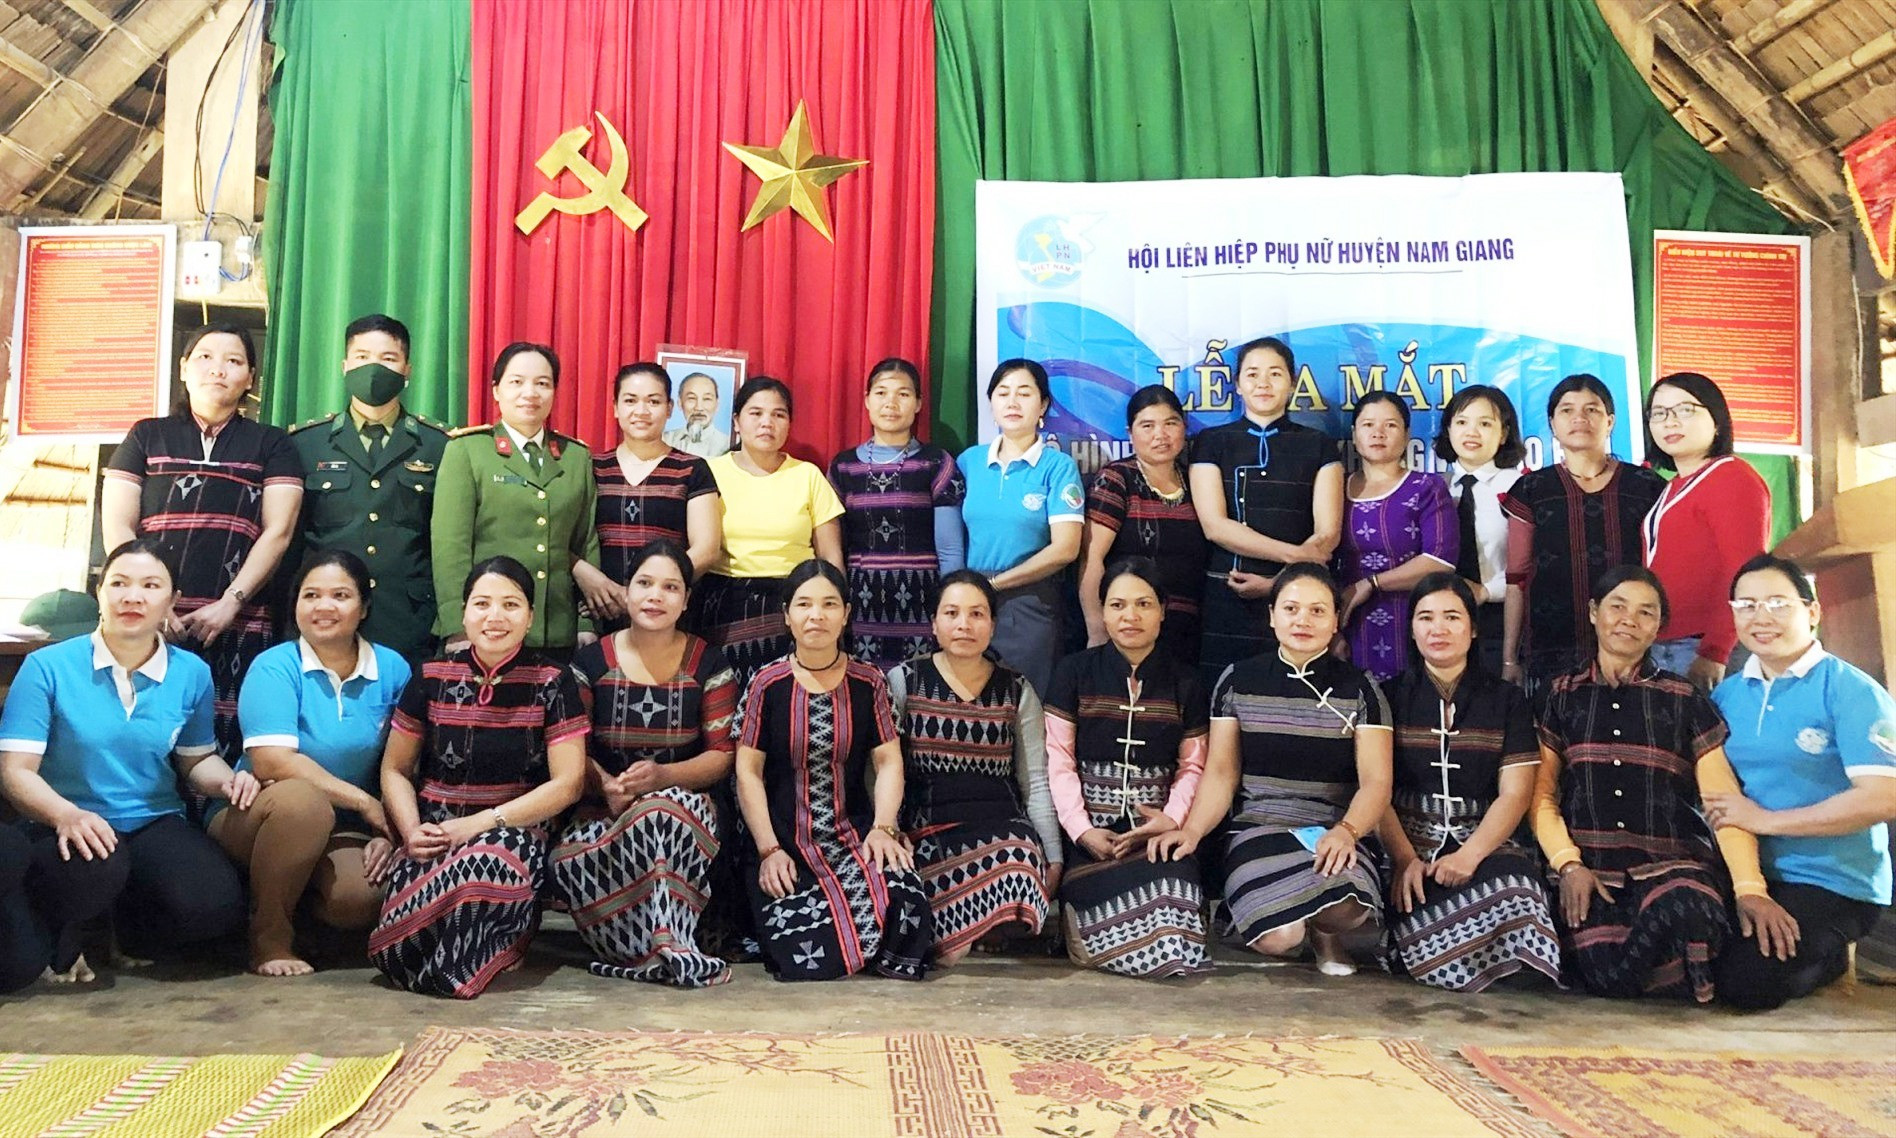 Đến thời điểm này, trên địa bàn Nam Giang thành lập được 6 mô hình “Chi hội phụ nữ nói không với tảo hôn và hôn nhân cận huyết thống”.